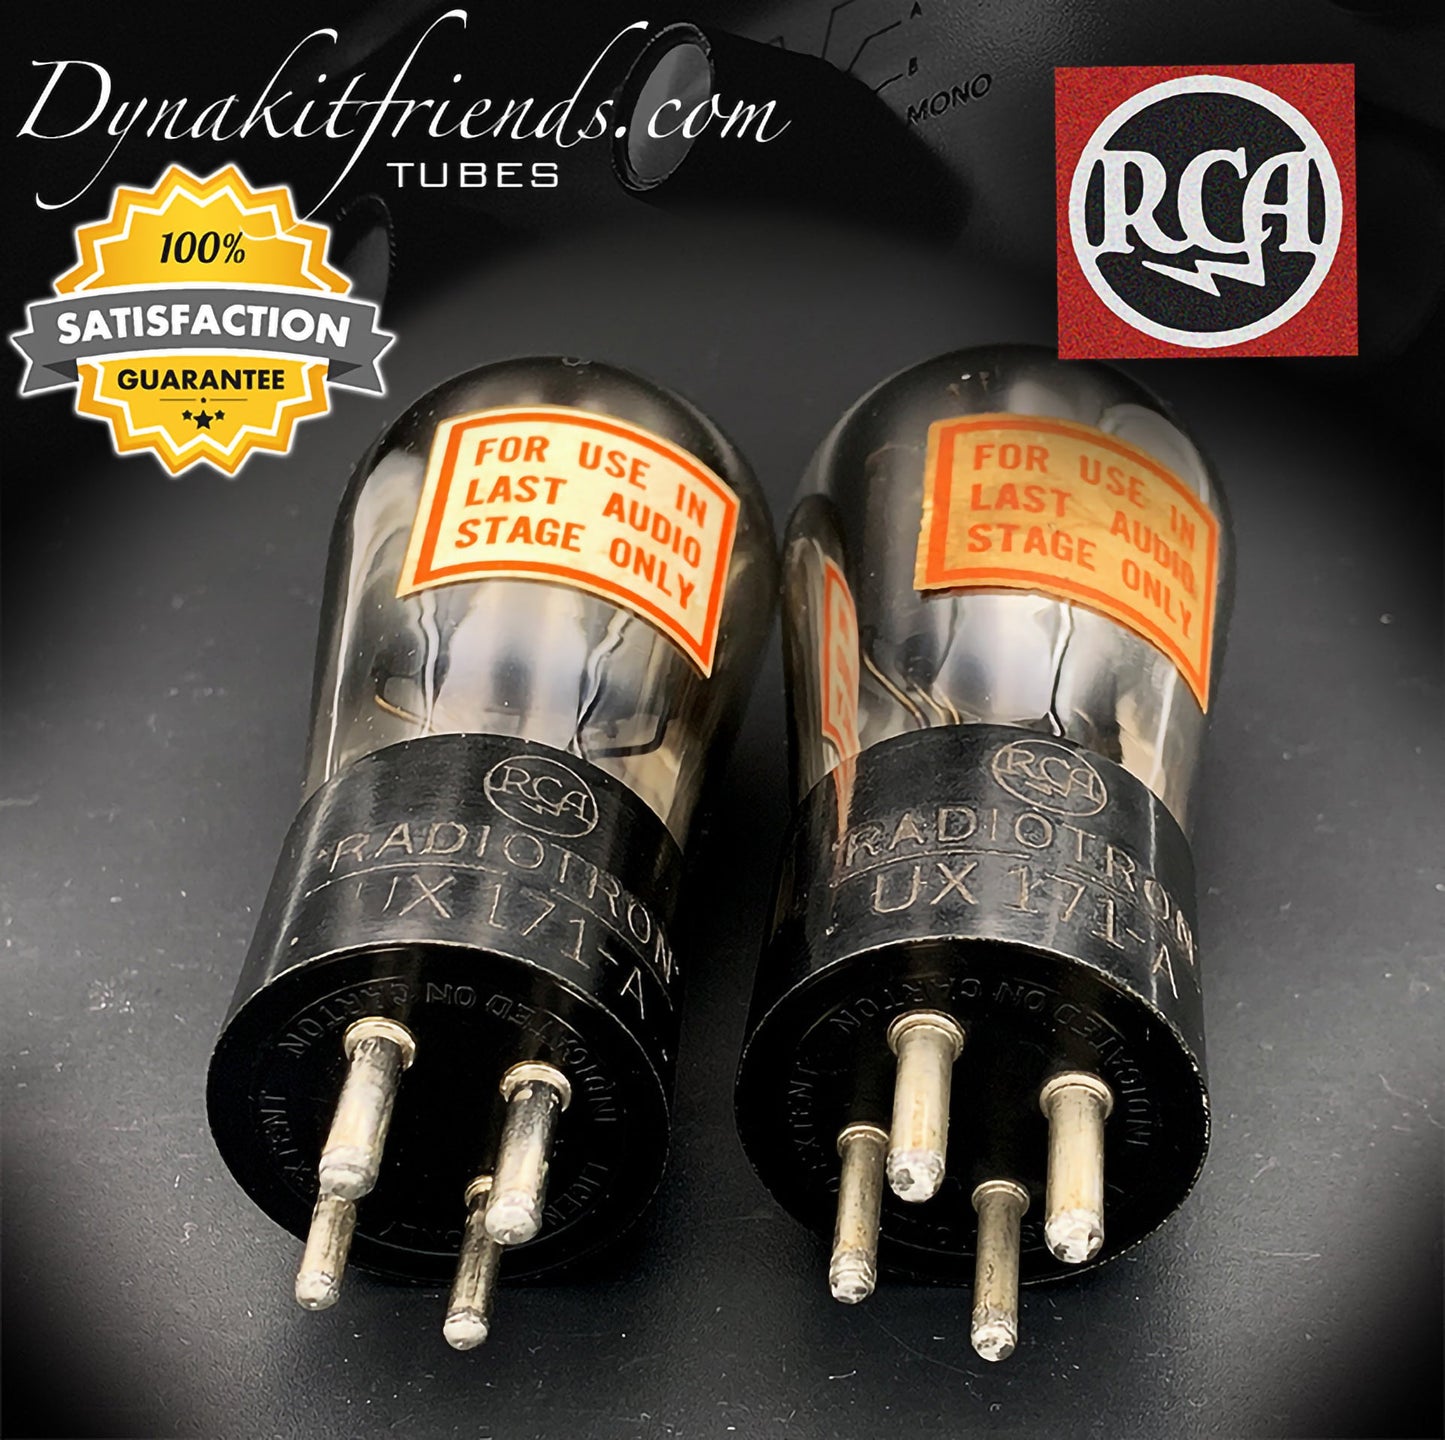 UX171A ( 71A ) RCA NOS Globe Power Triode Paire de tubes assortis fabriqués aux États-Unis 1928